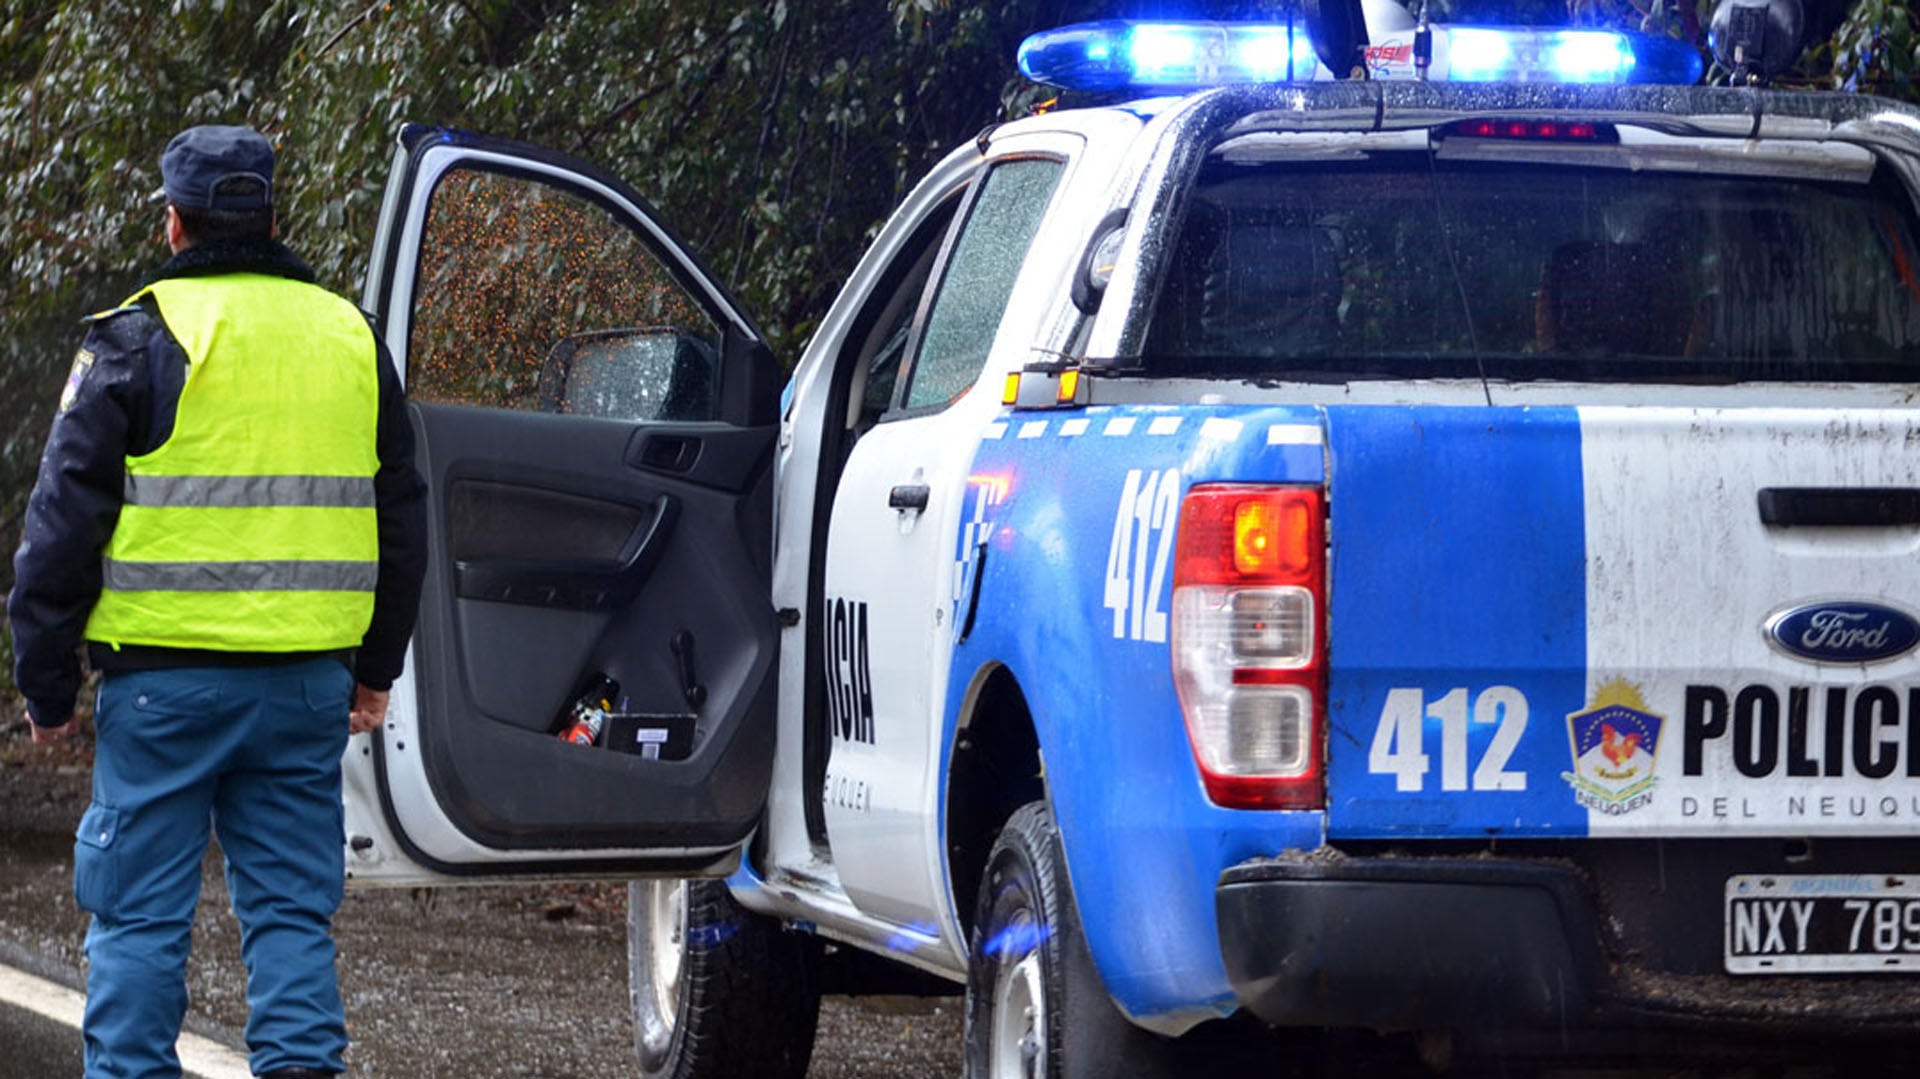 La Policía de Neuquén emitió una Alerta Nati para rastrear a la joven